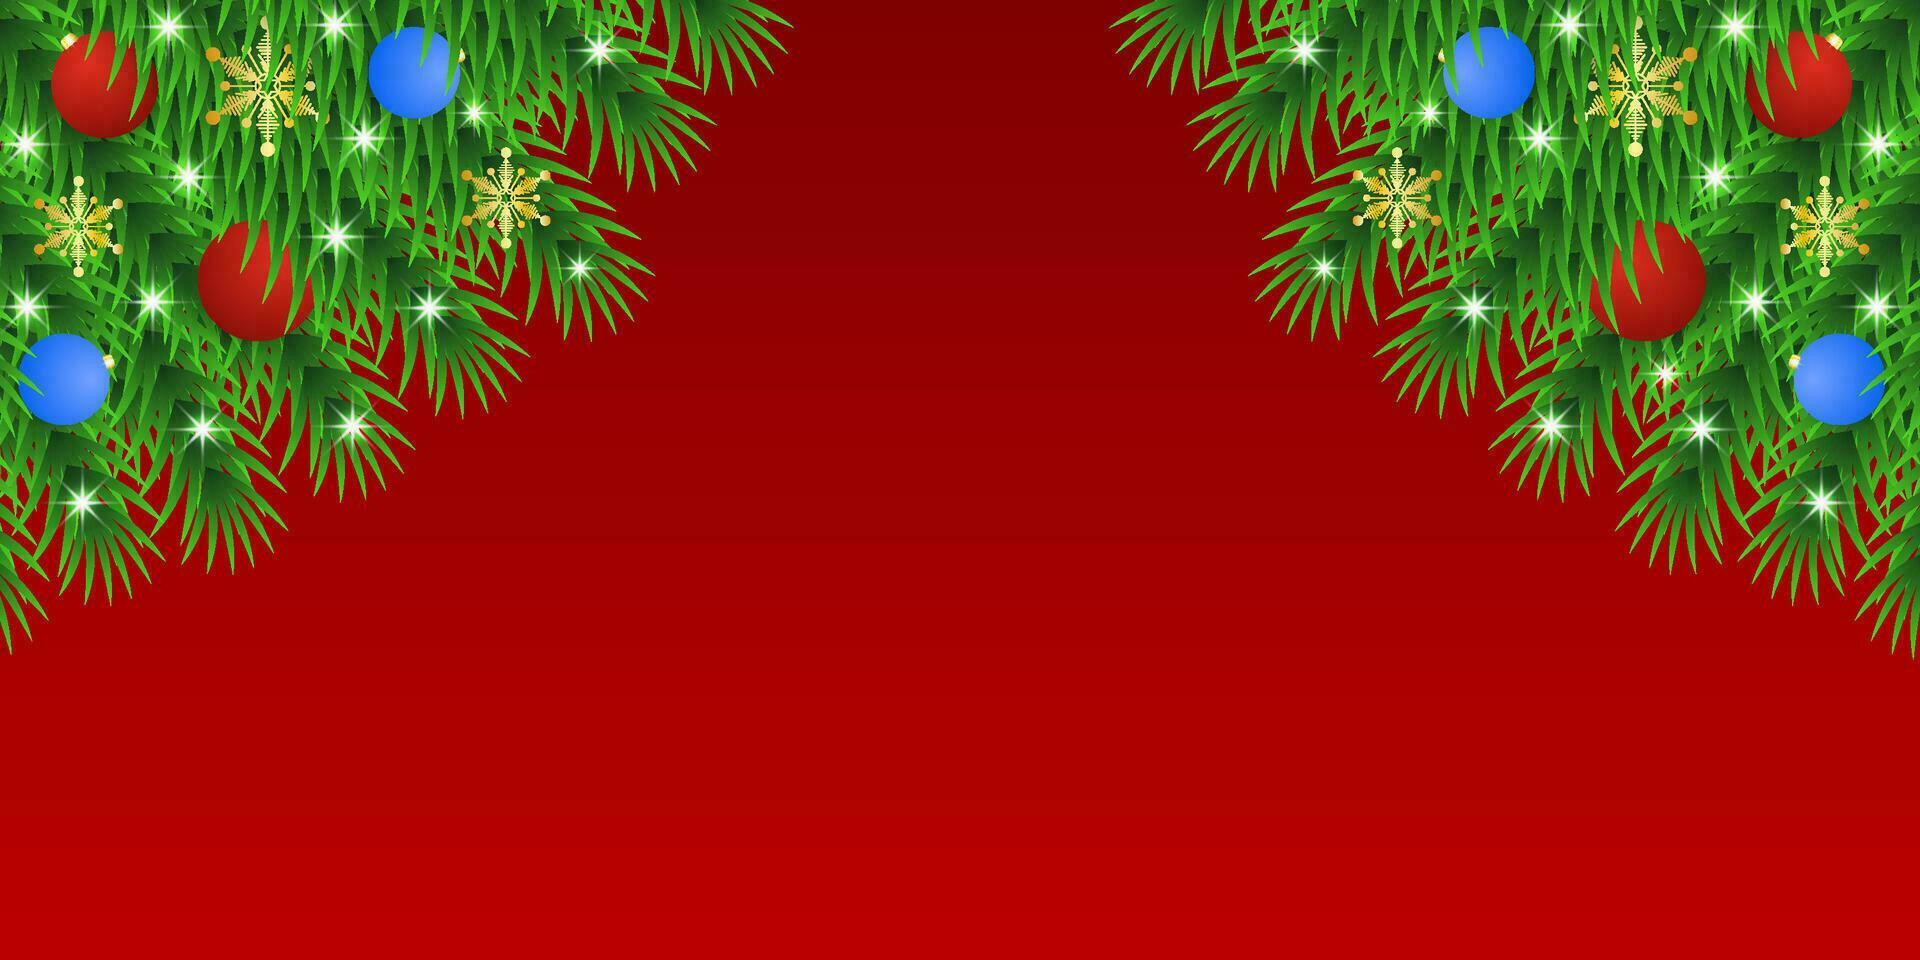 realistisk jul grön blad baner med blå och röd bollar med lampor och snöflingor med röd bakgrund. vektor